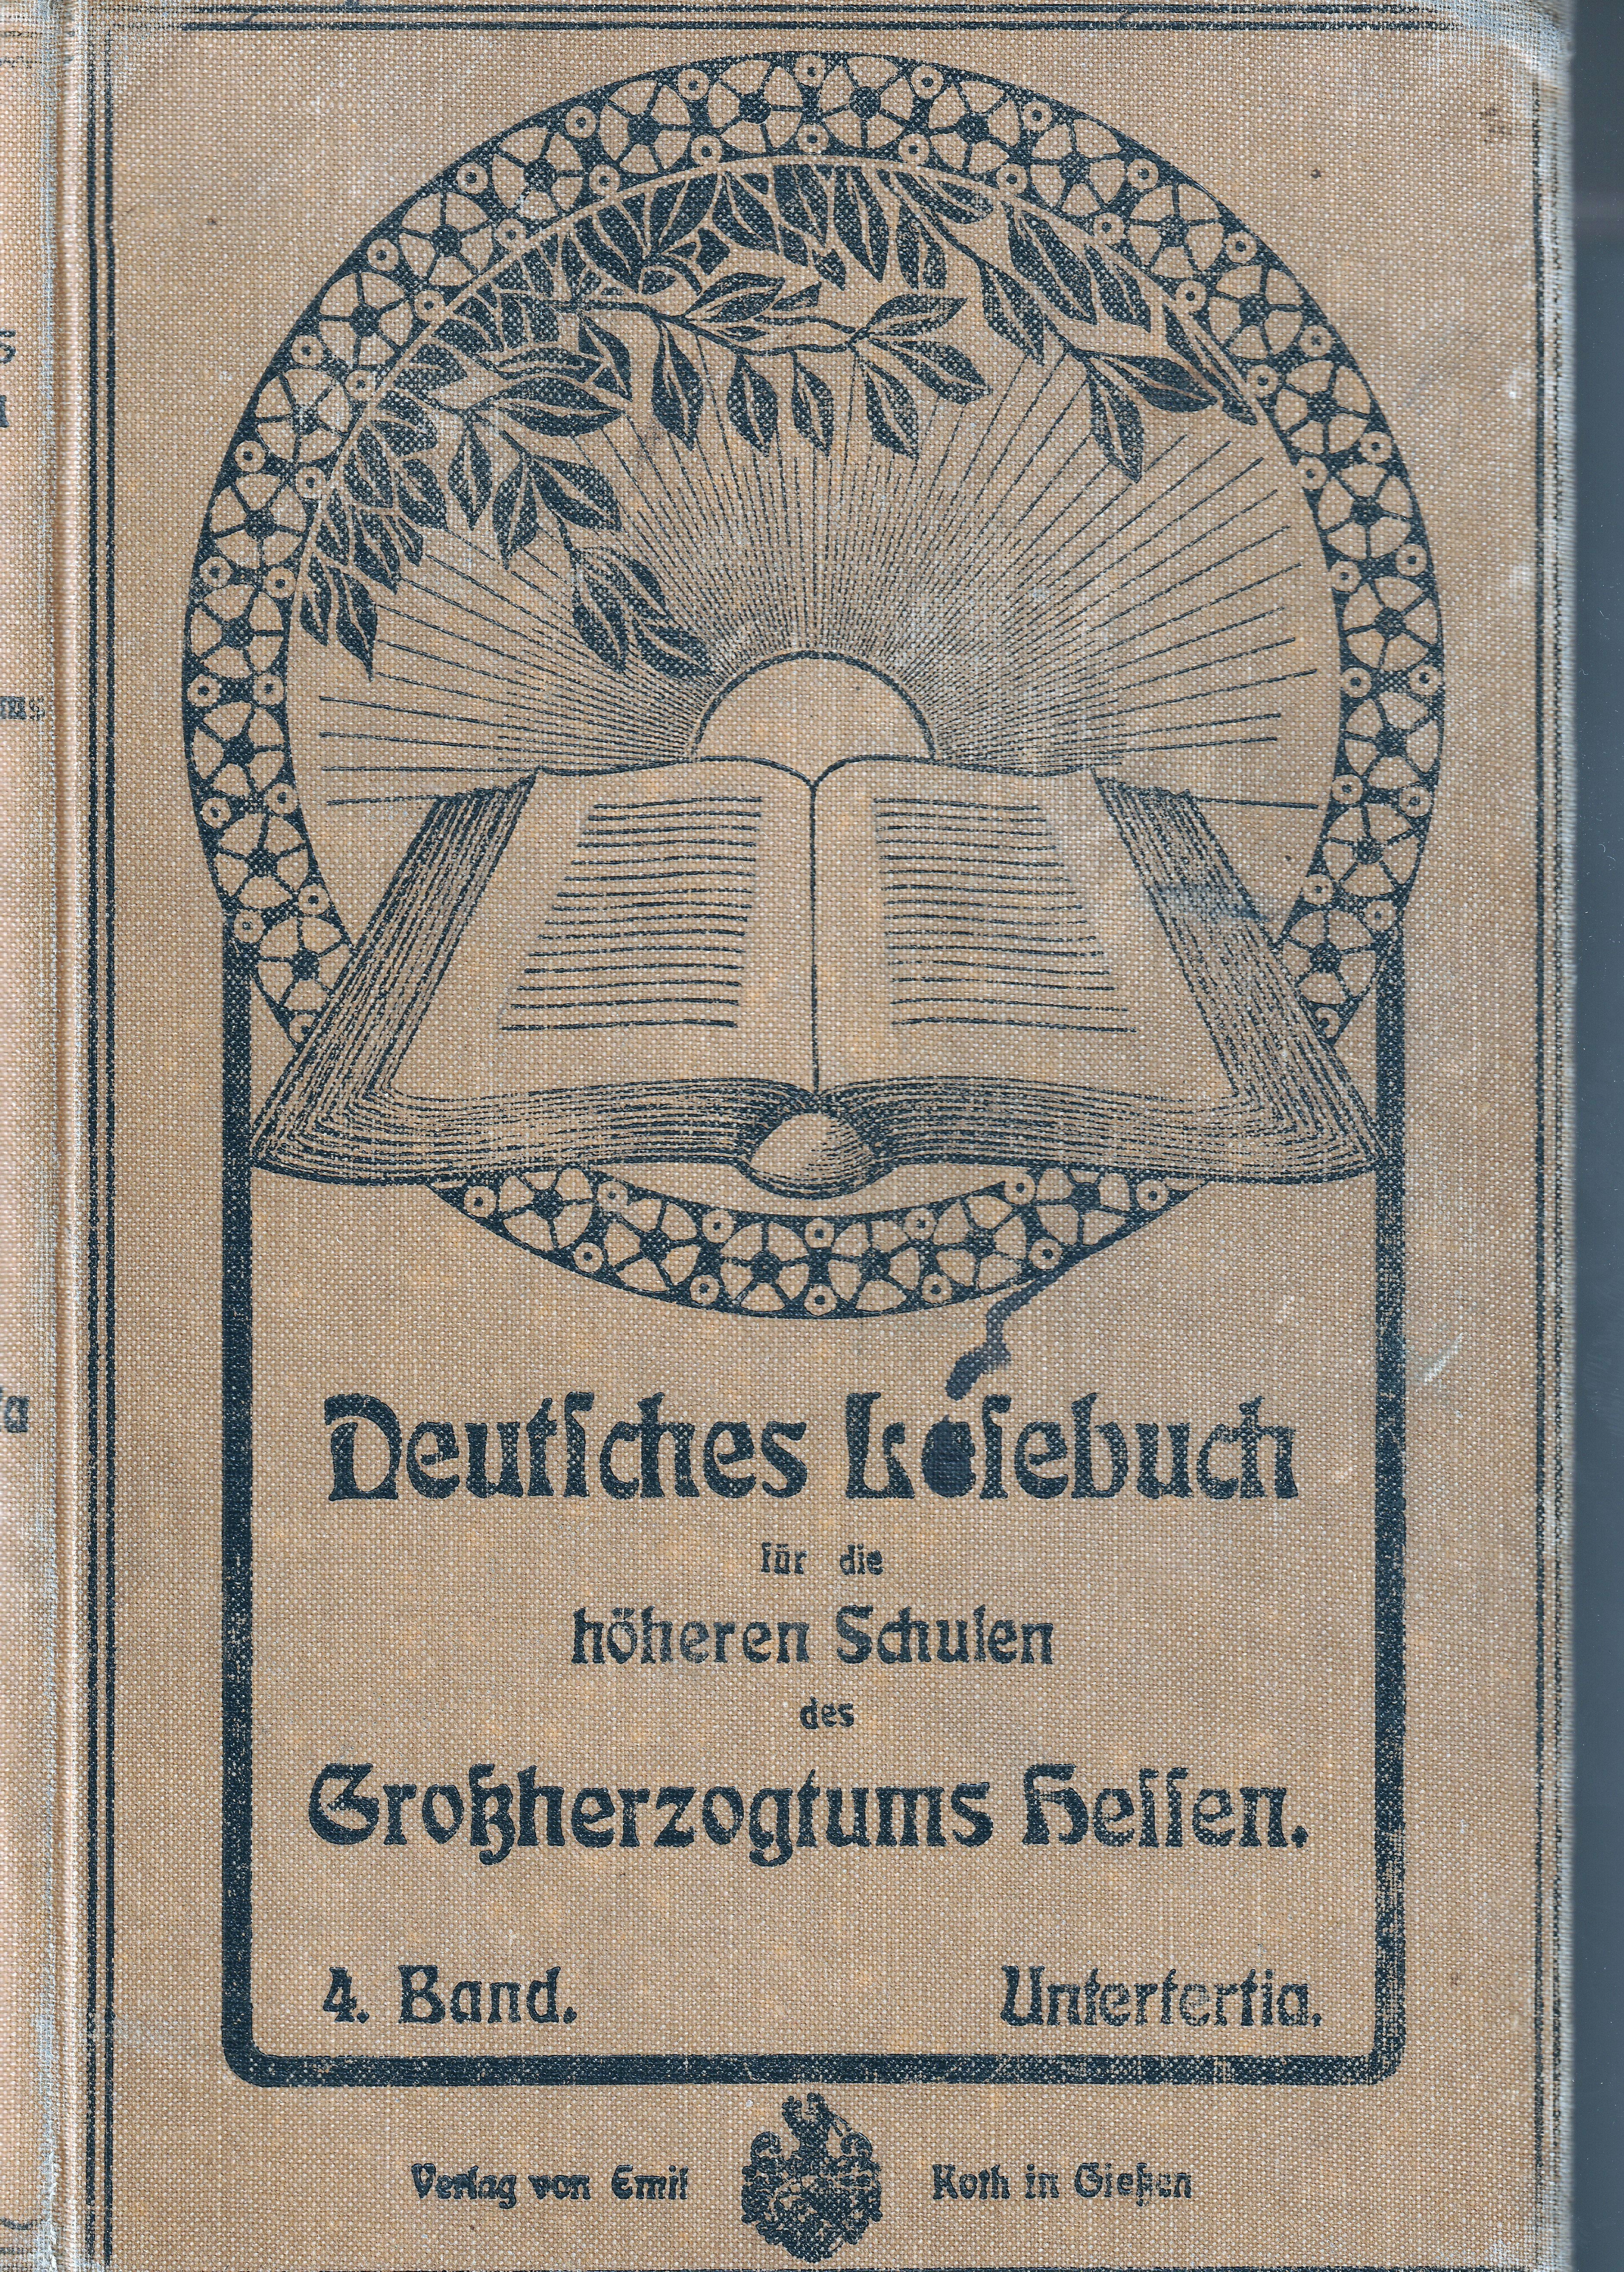 Deutsches Lesebuch 4. Band Untertertia (Museum Guntersblum CC BY-NC-SA)